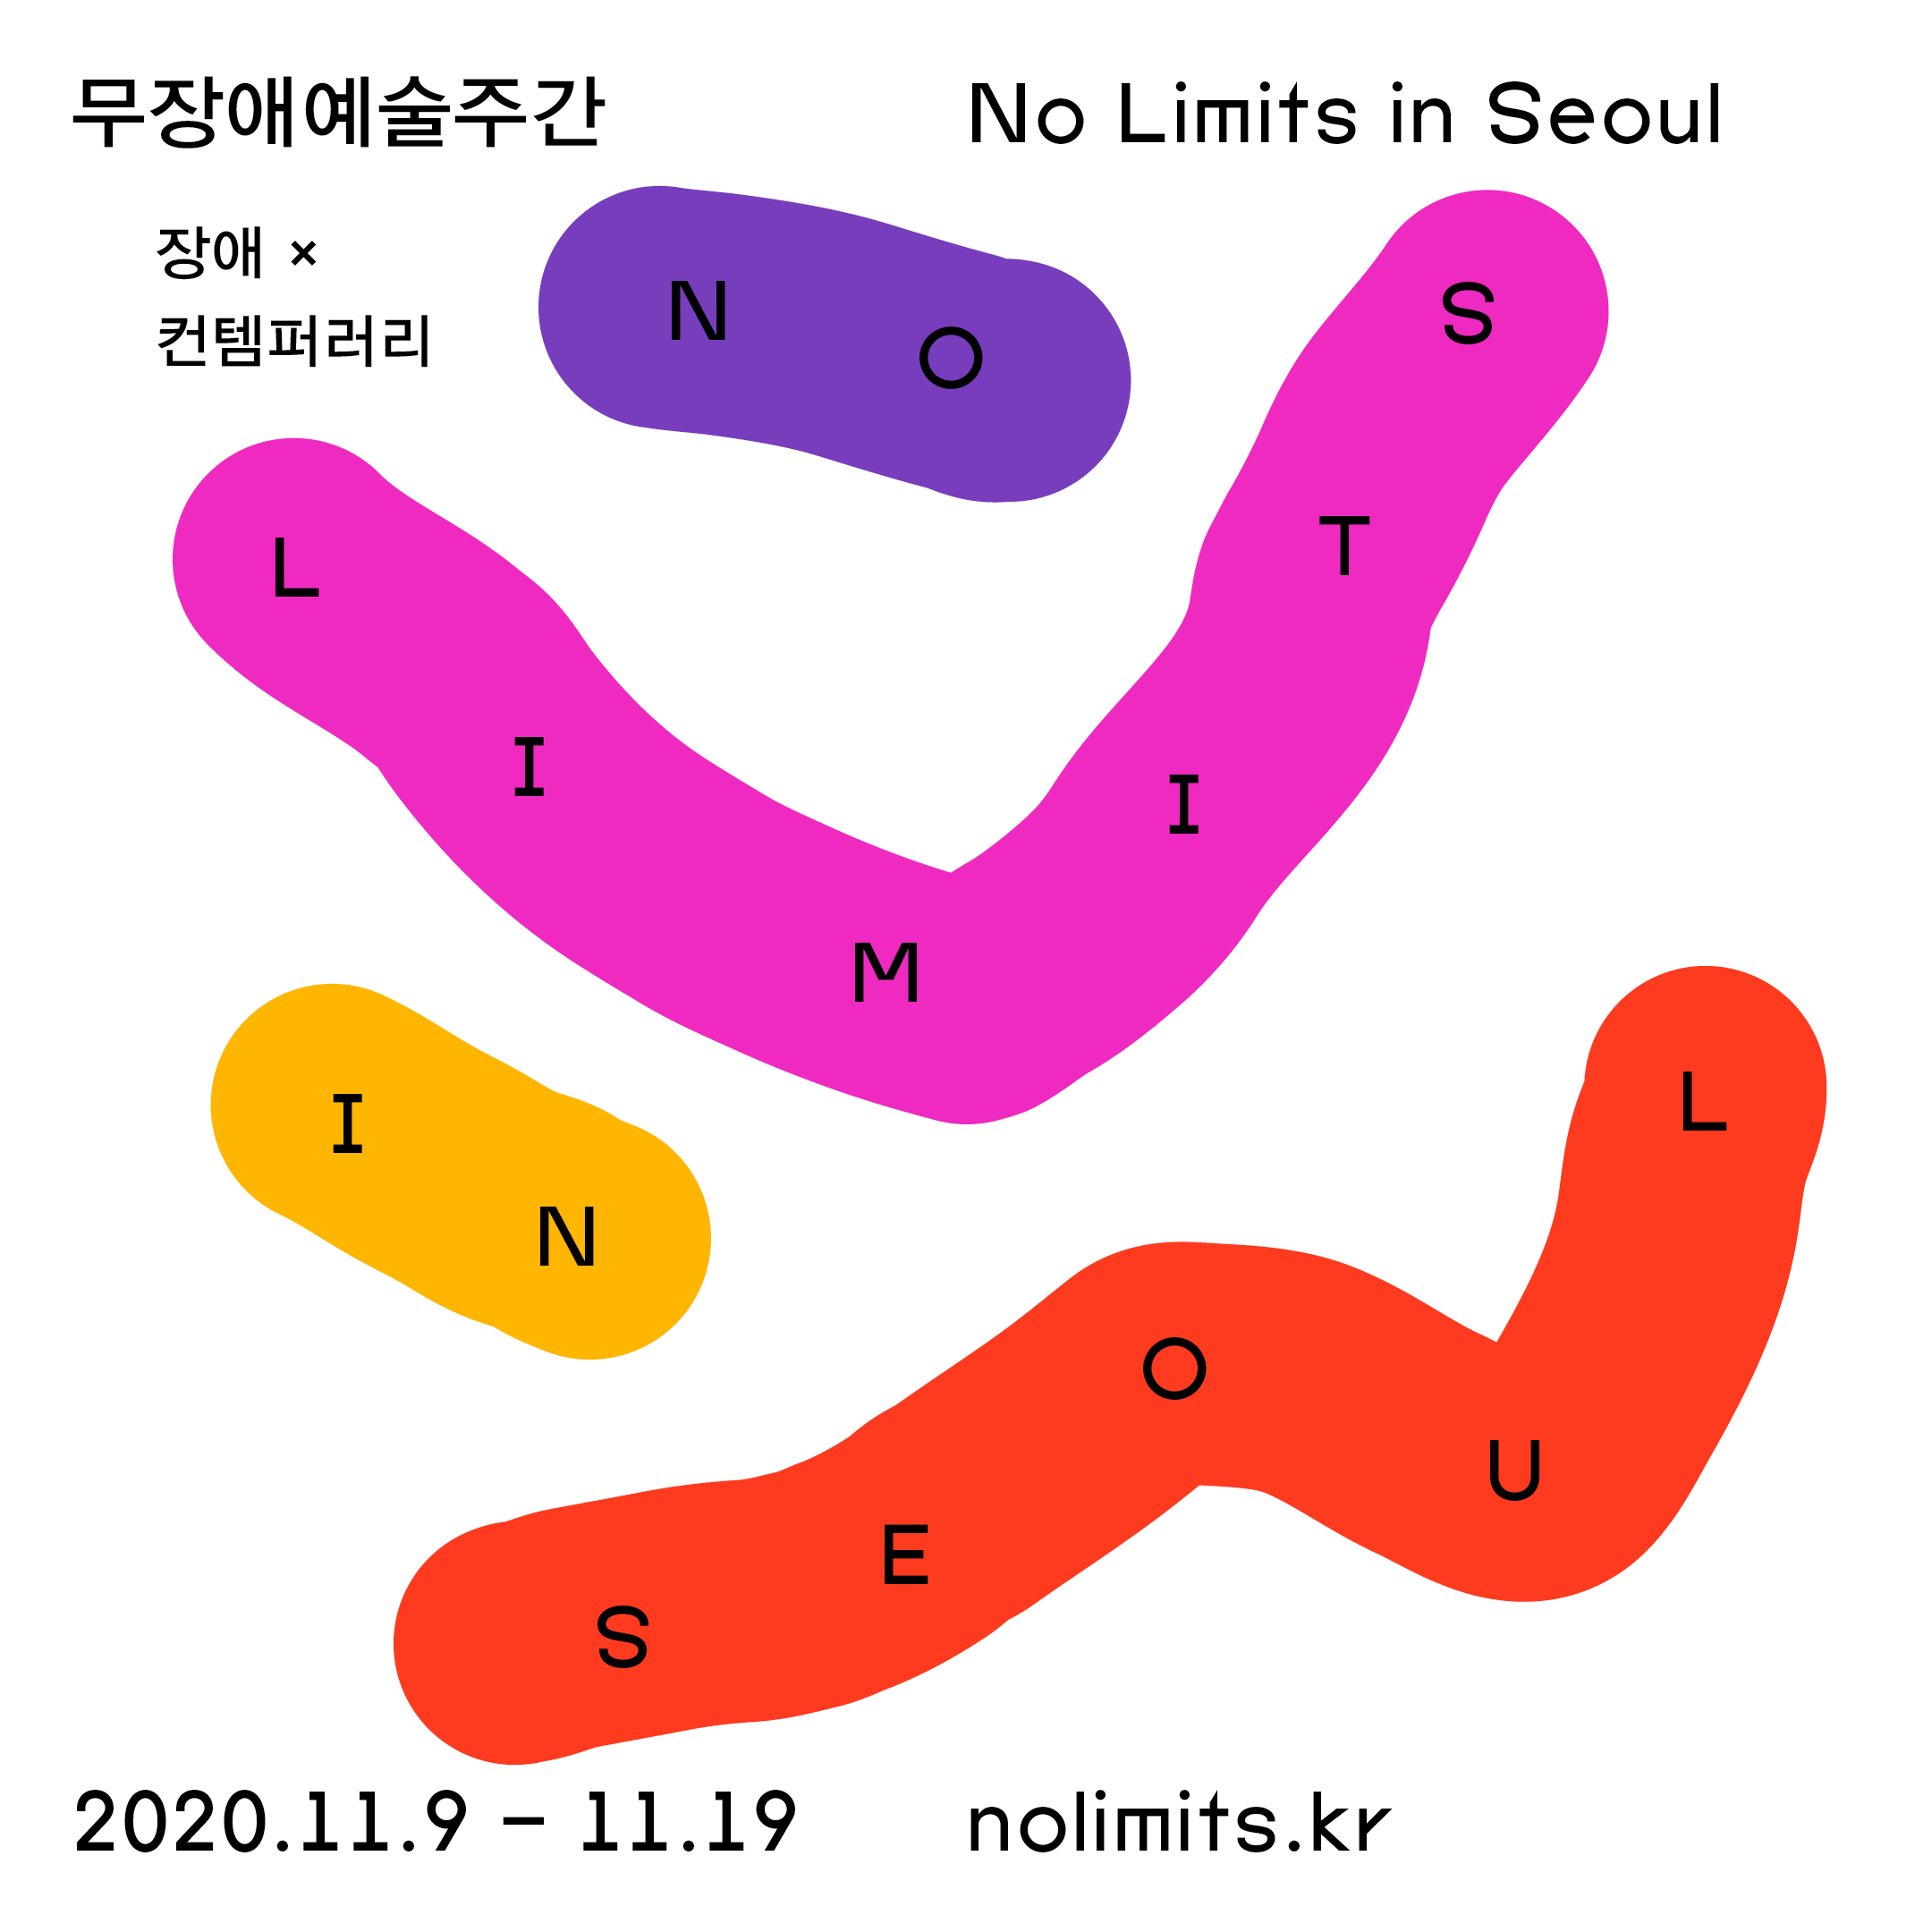 무장애예술주간: No Limits in Seoul(공연, 포럼, 영화상영 등 다양한 프로그램 진행)으로 초대합니다